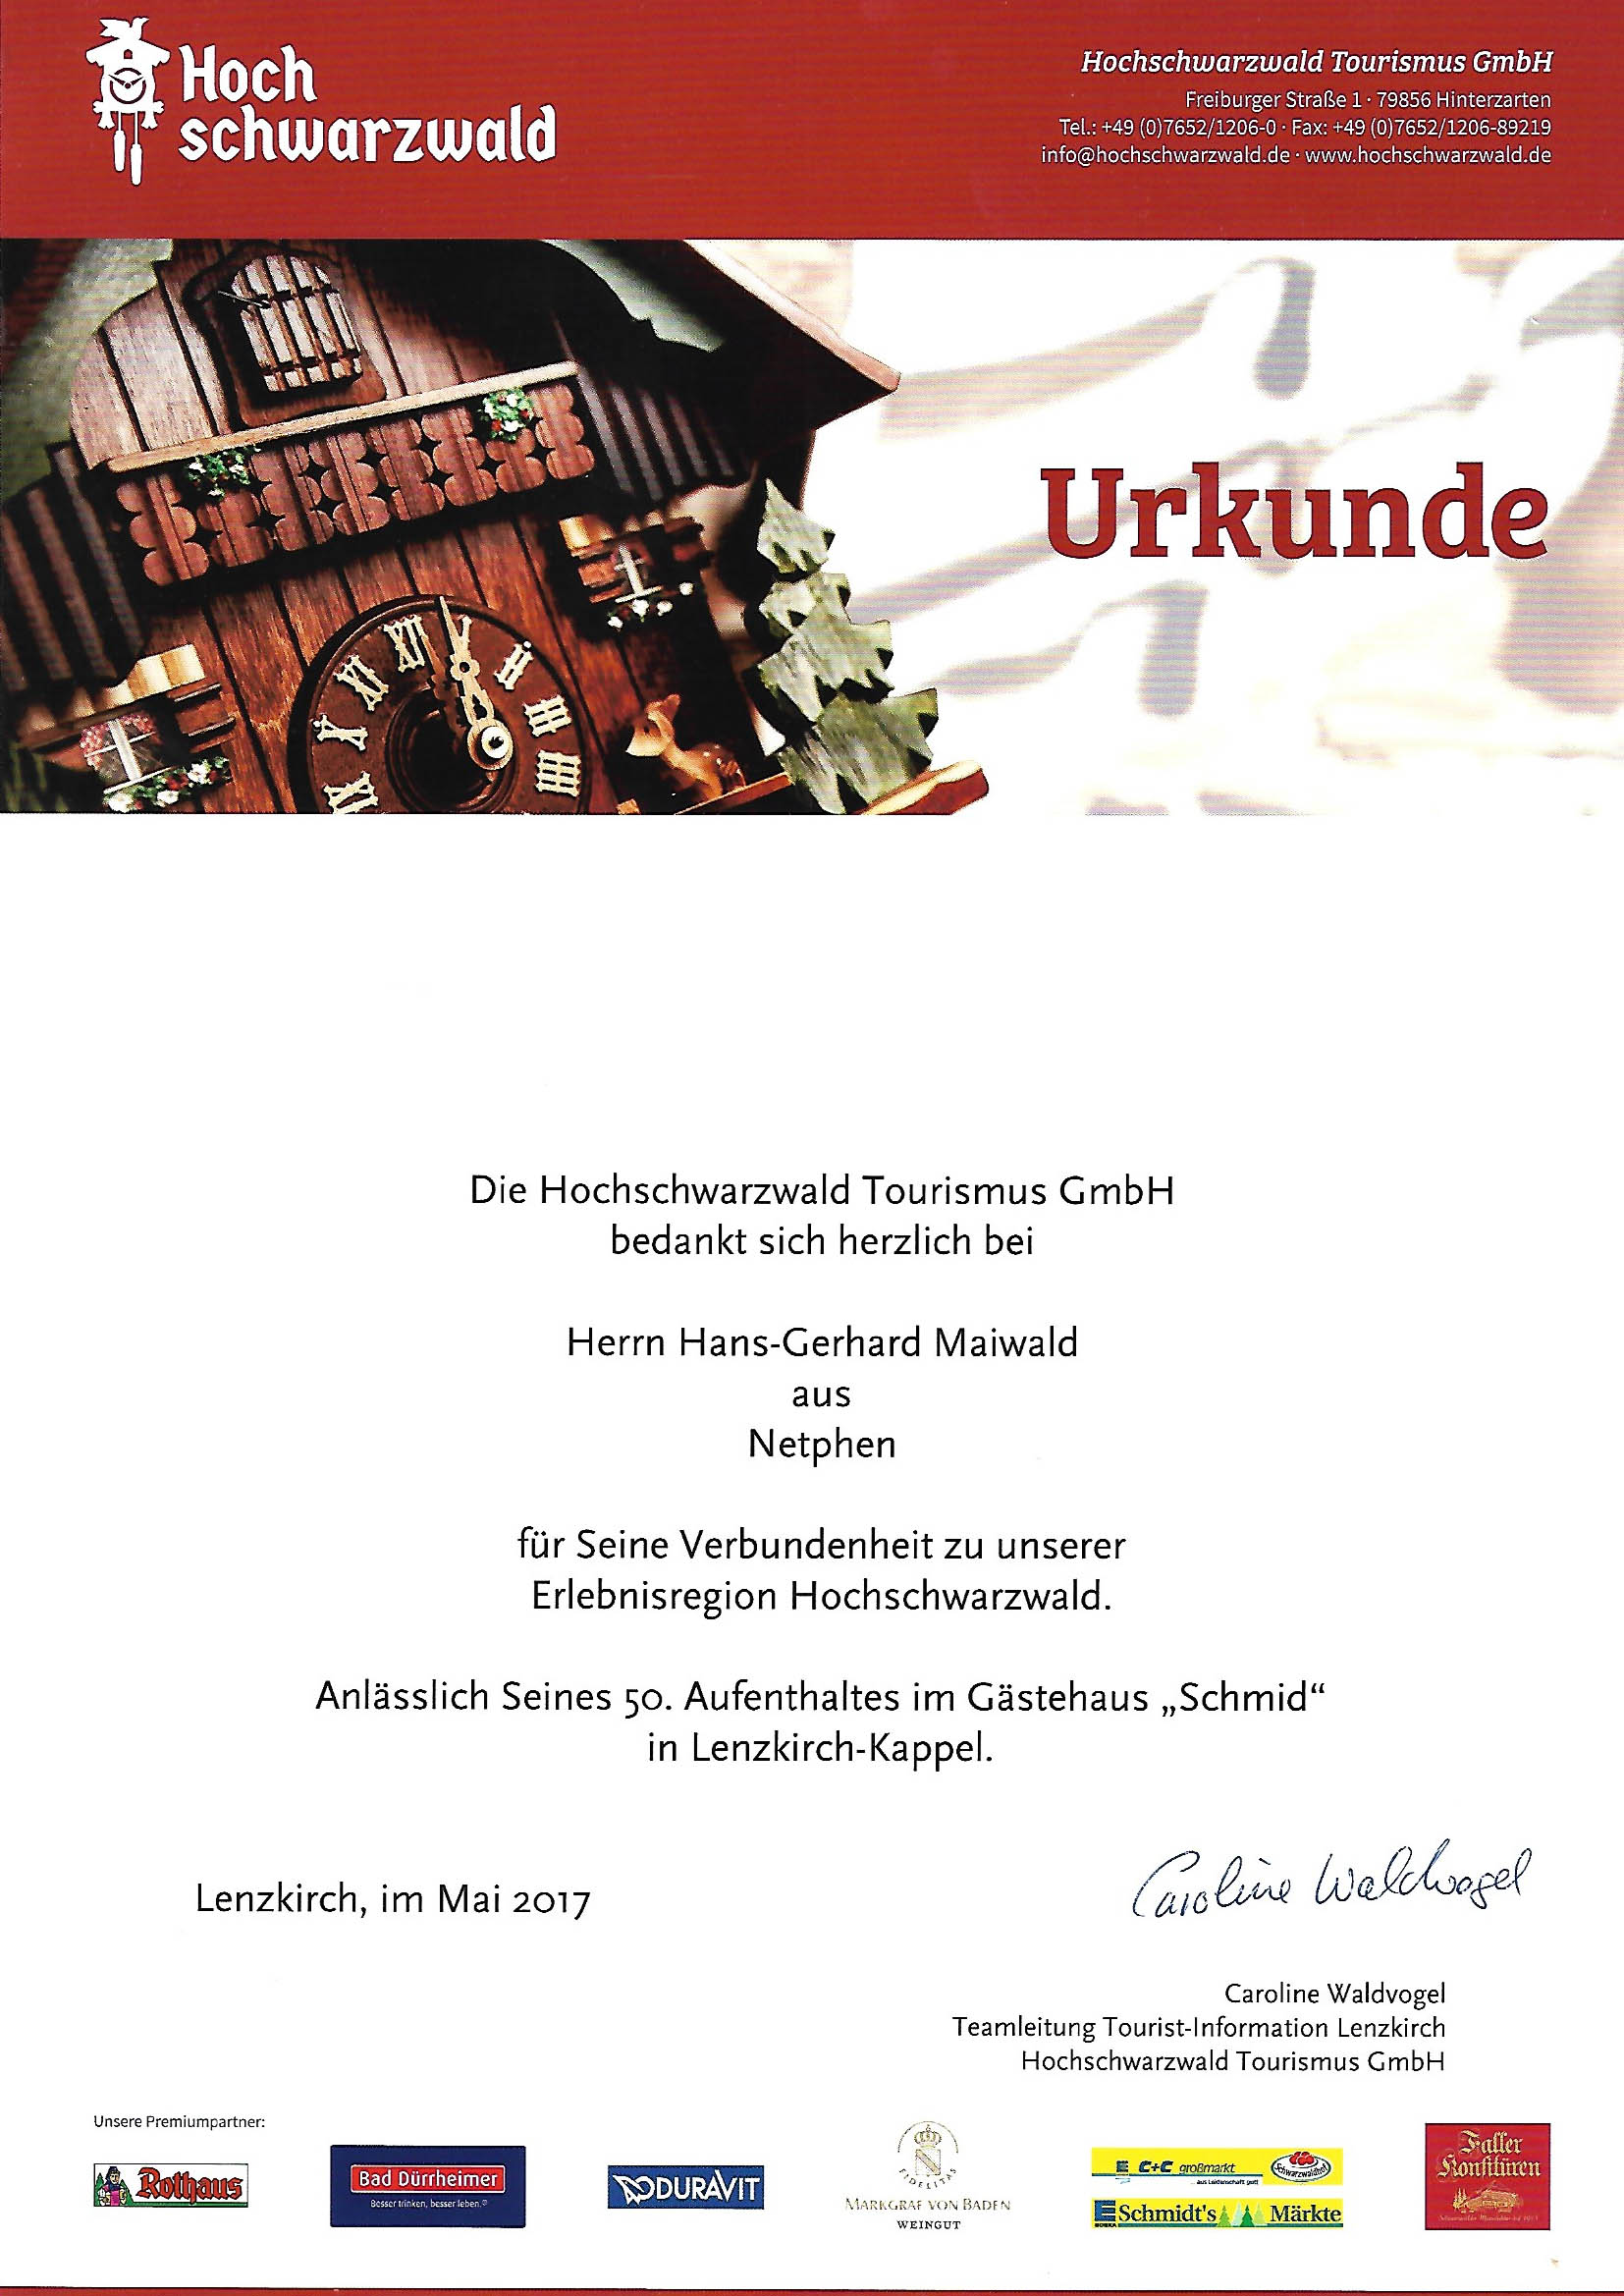 Auszeichnung durch die Hochschwarzwaldtourismus GmbH